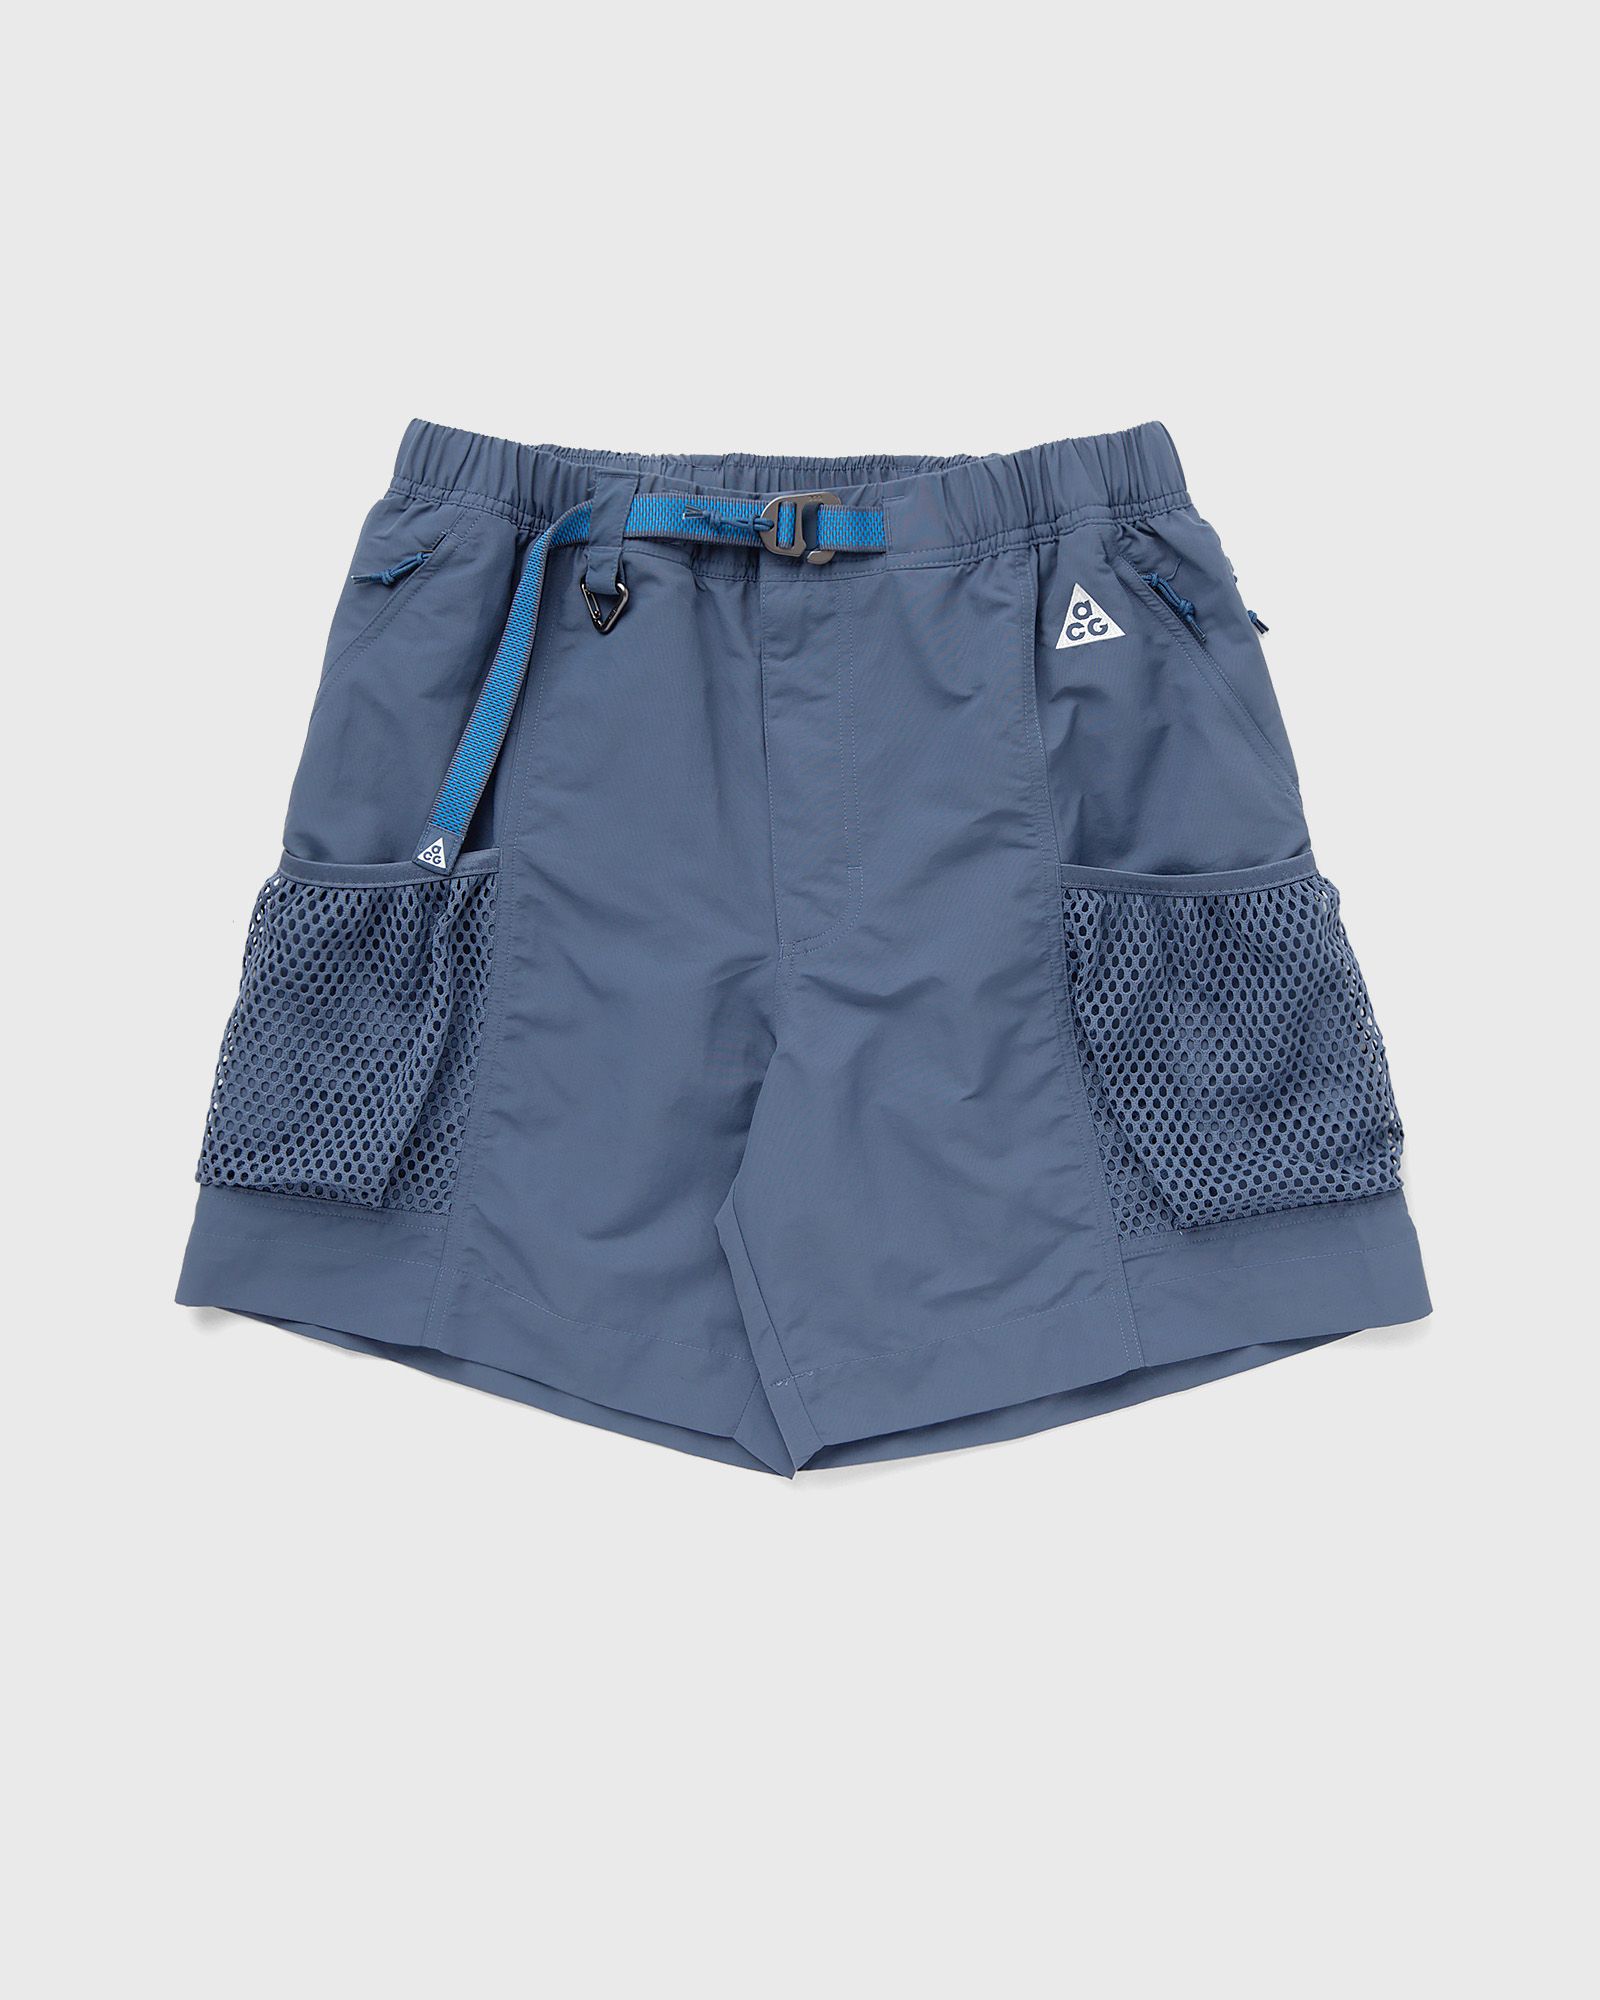 Nike - acg 'snowgrass' cargo shorts men sport & team shorts blue in größe:xl